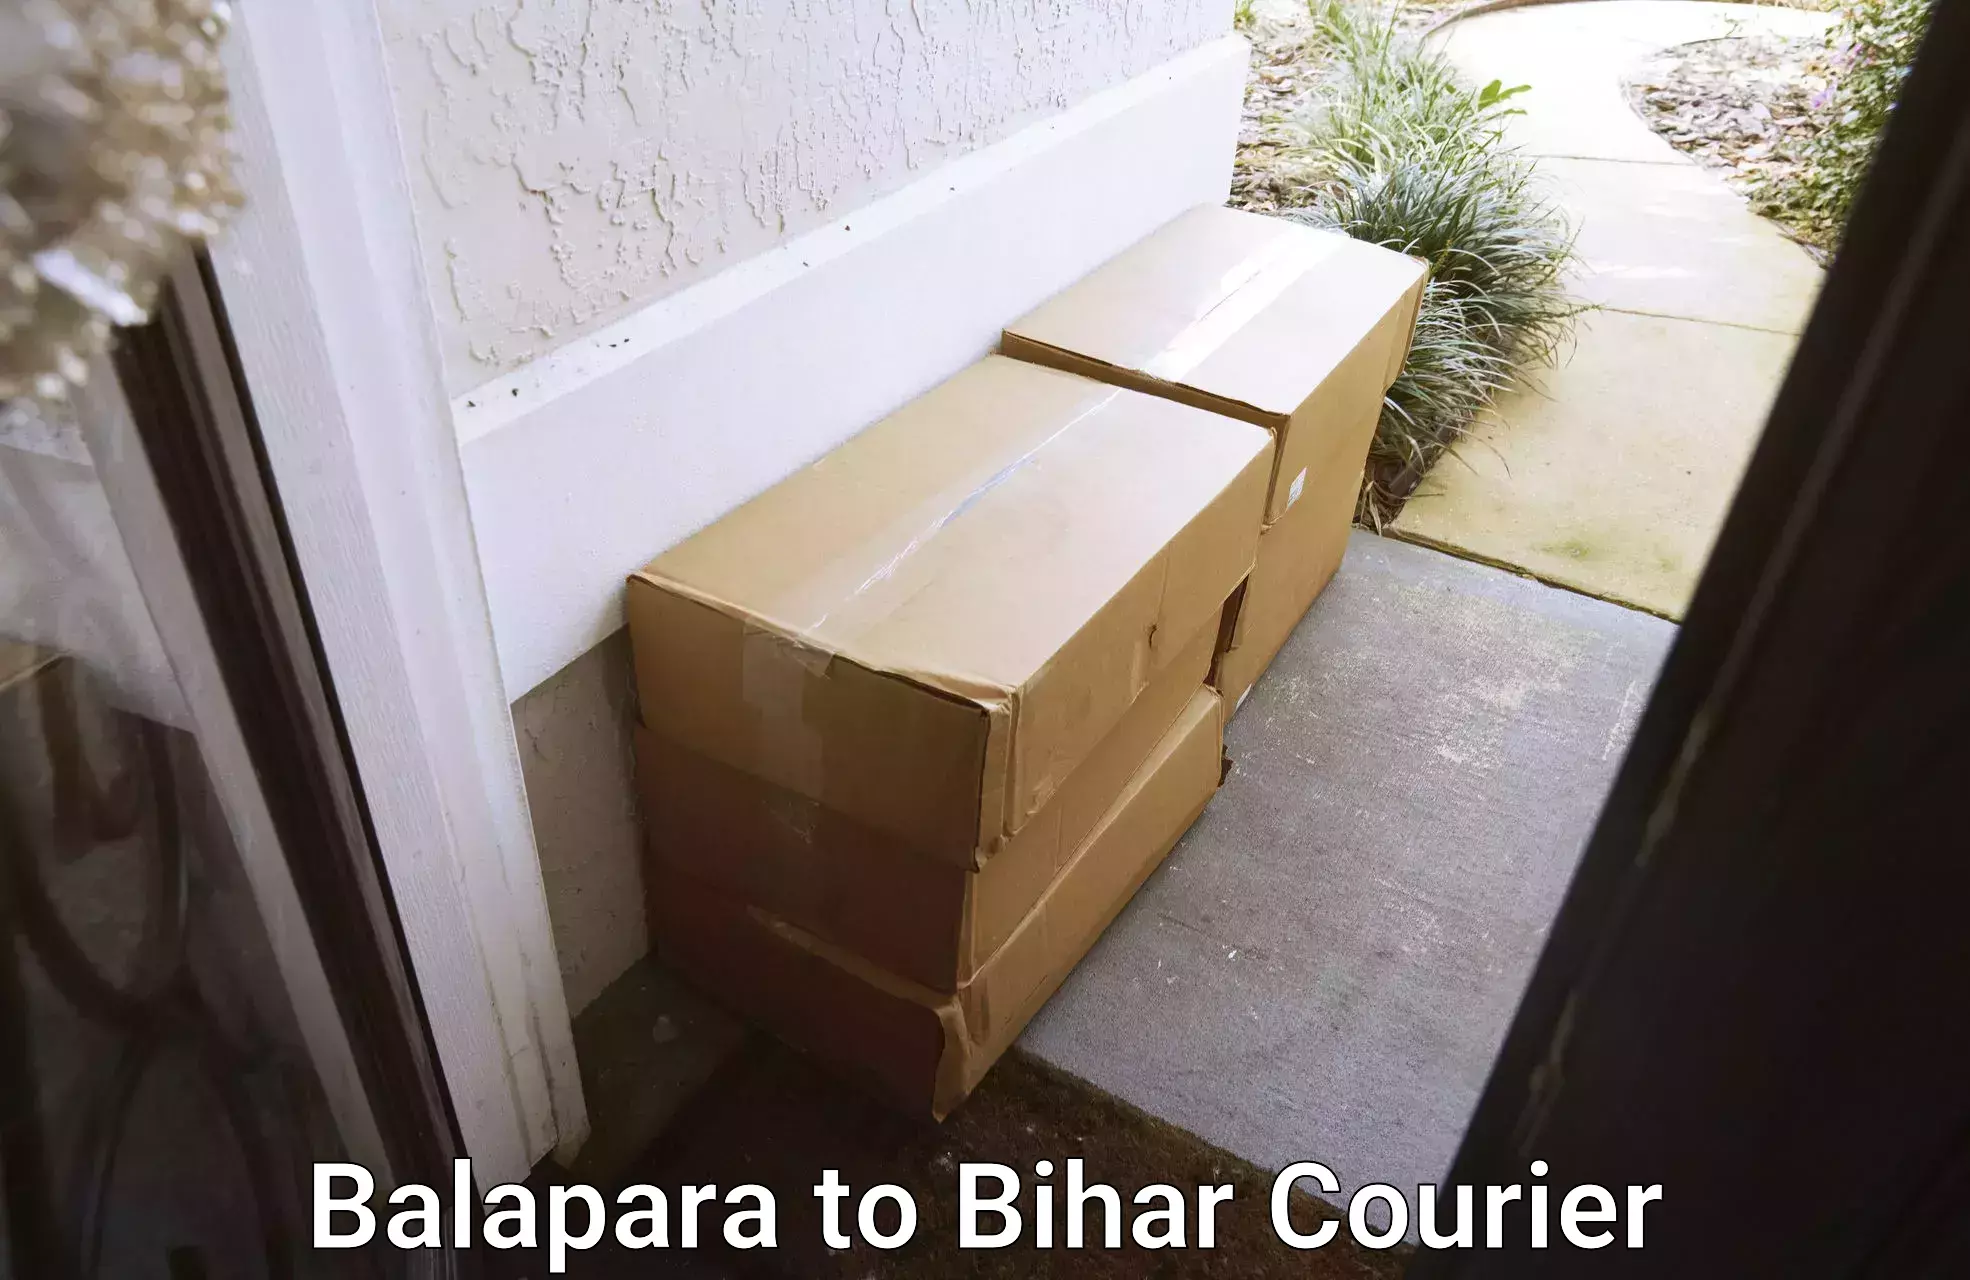 Holiday shipping services Balapara to Jiwdhara